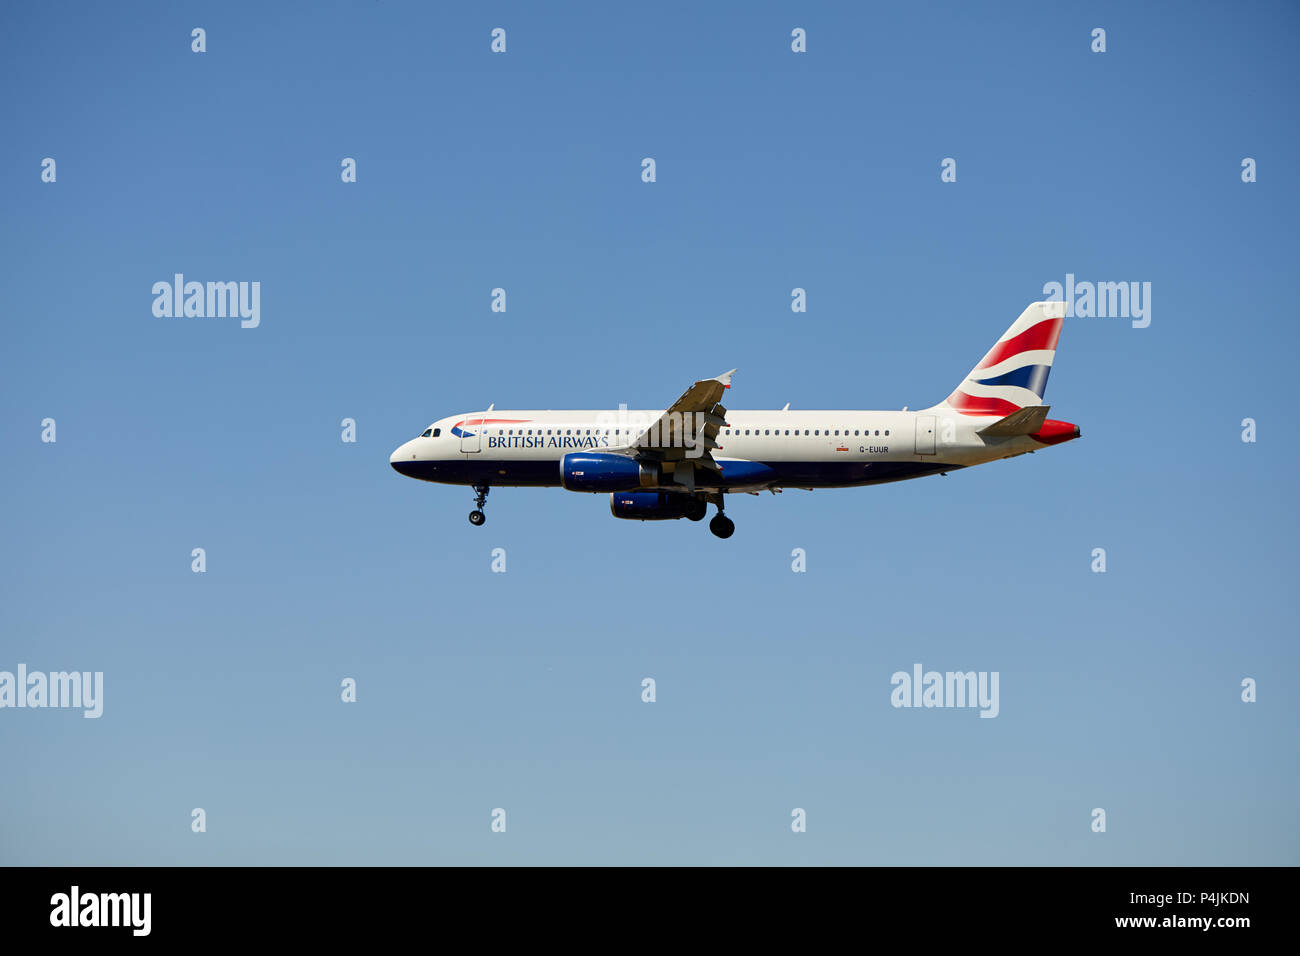 Un British Airways Airbus A320-232 aircraft, numéro d'enregistrement G-EUUR, approche d'un atterrissage. Banque D'Images